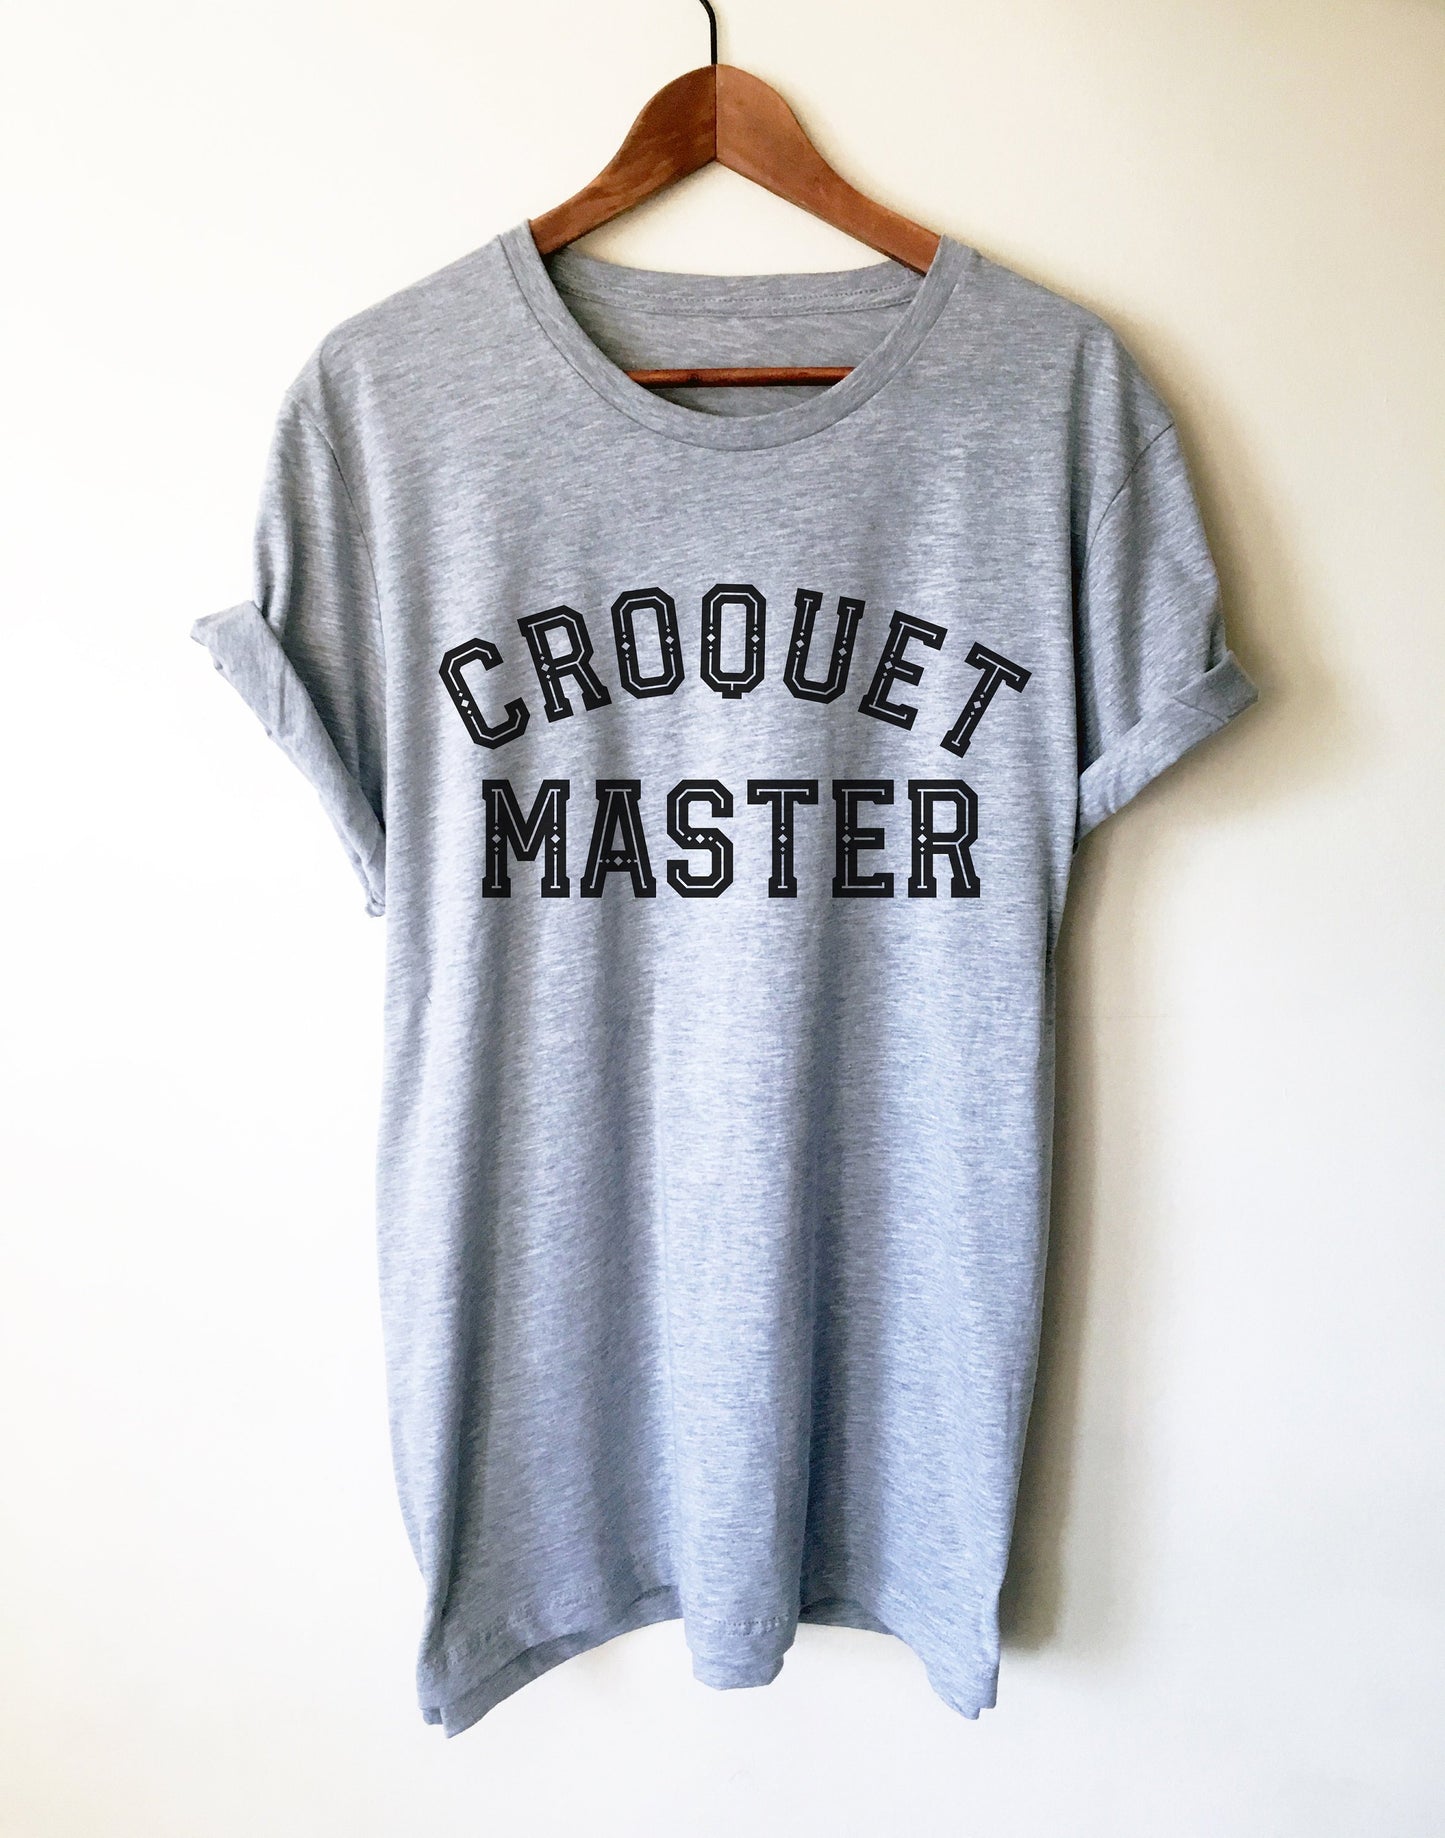 Croquet Master Unisex Shirt - Croquet Shirt, Croquet Gift, College Shirt, College Gift, Croquet Club, Cambridge Shirt